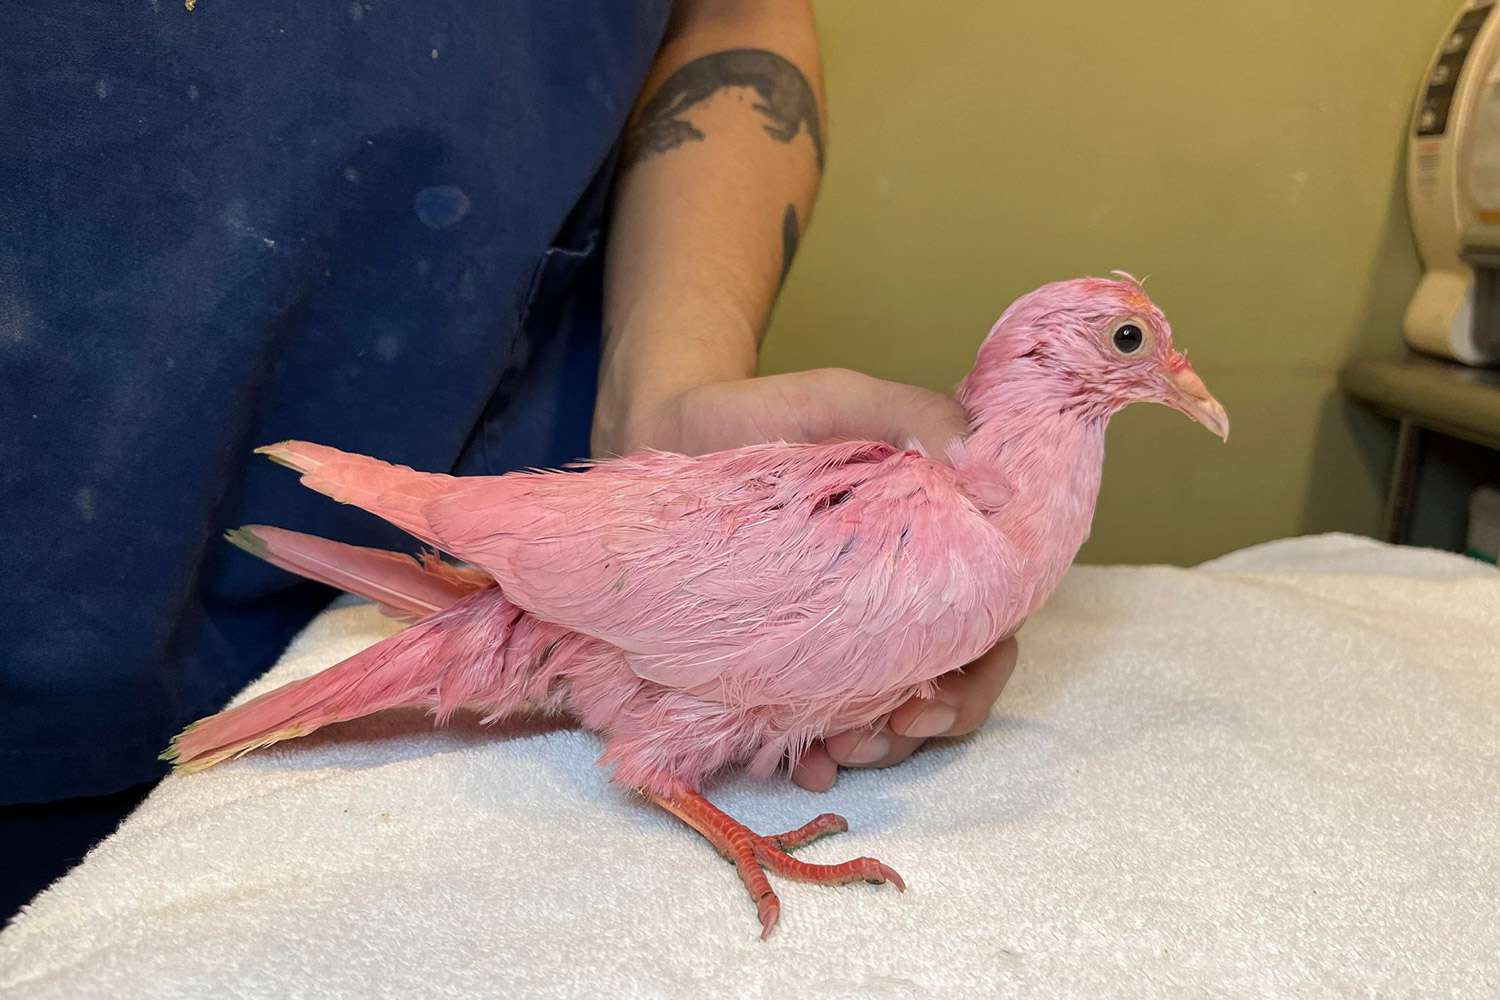 Animal Rescue mette in guardia "Non tingere mai un uccello" dopo che il piccione rosa "lotta" è stato trovato a vagare per New York